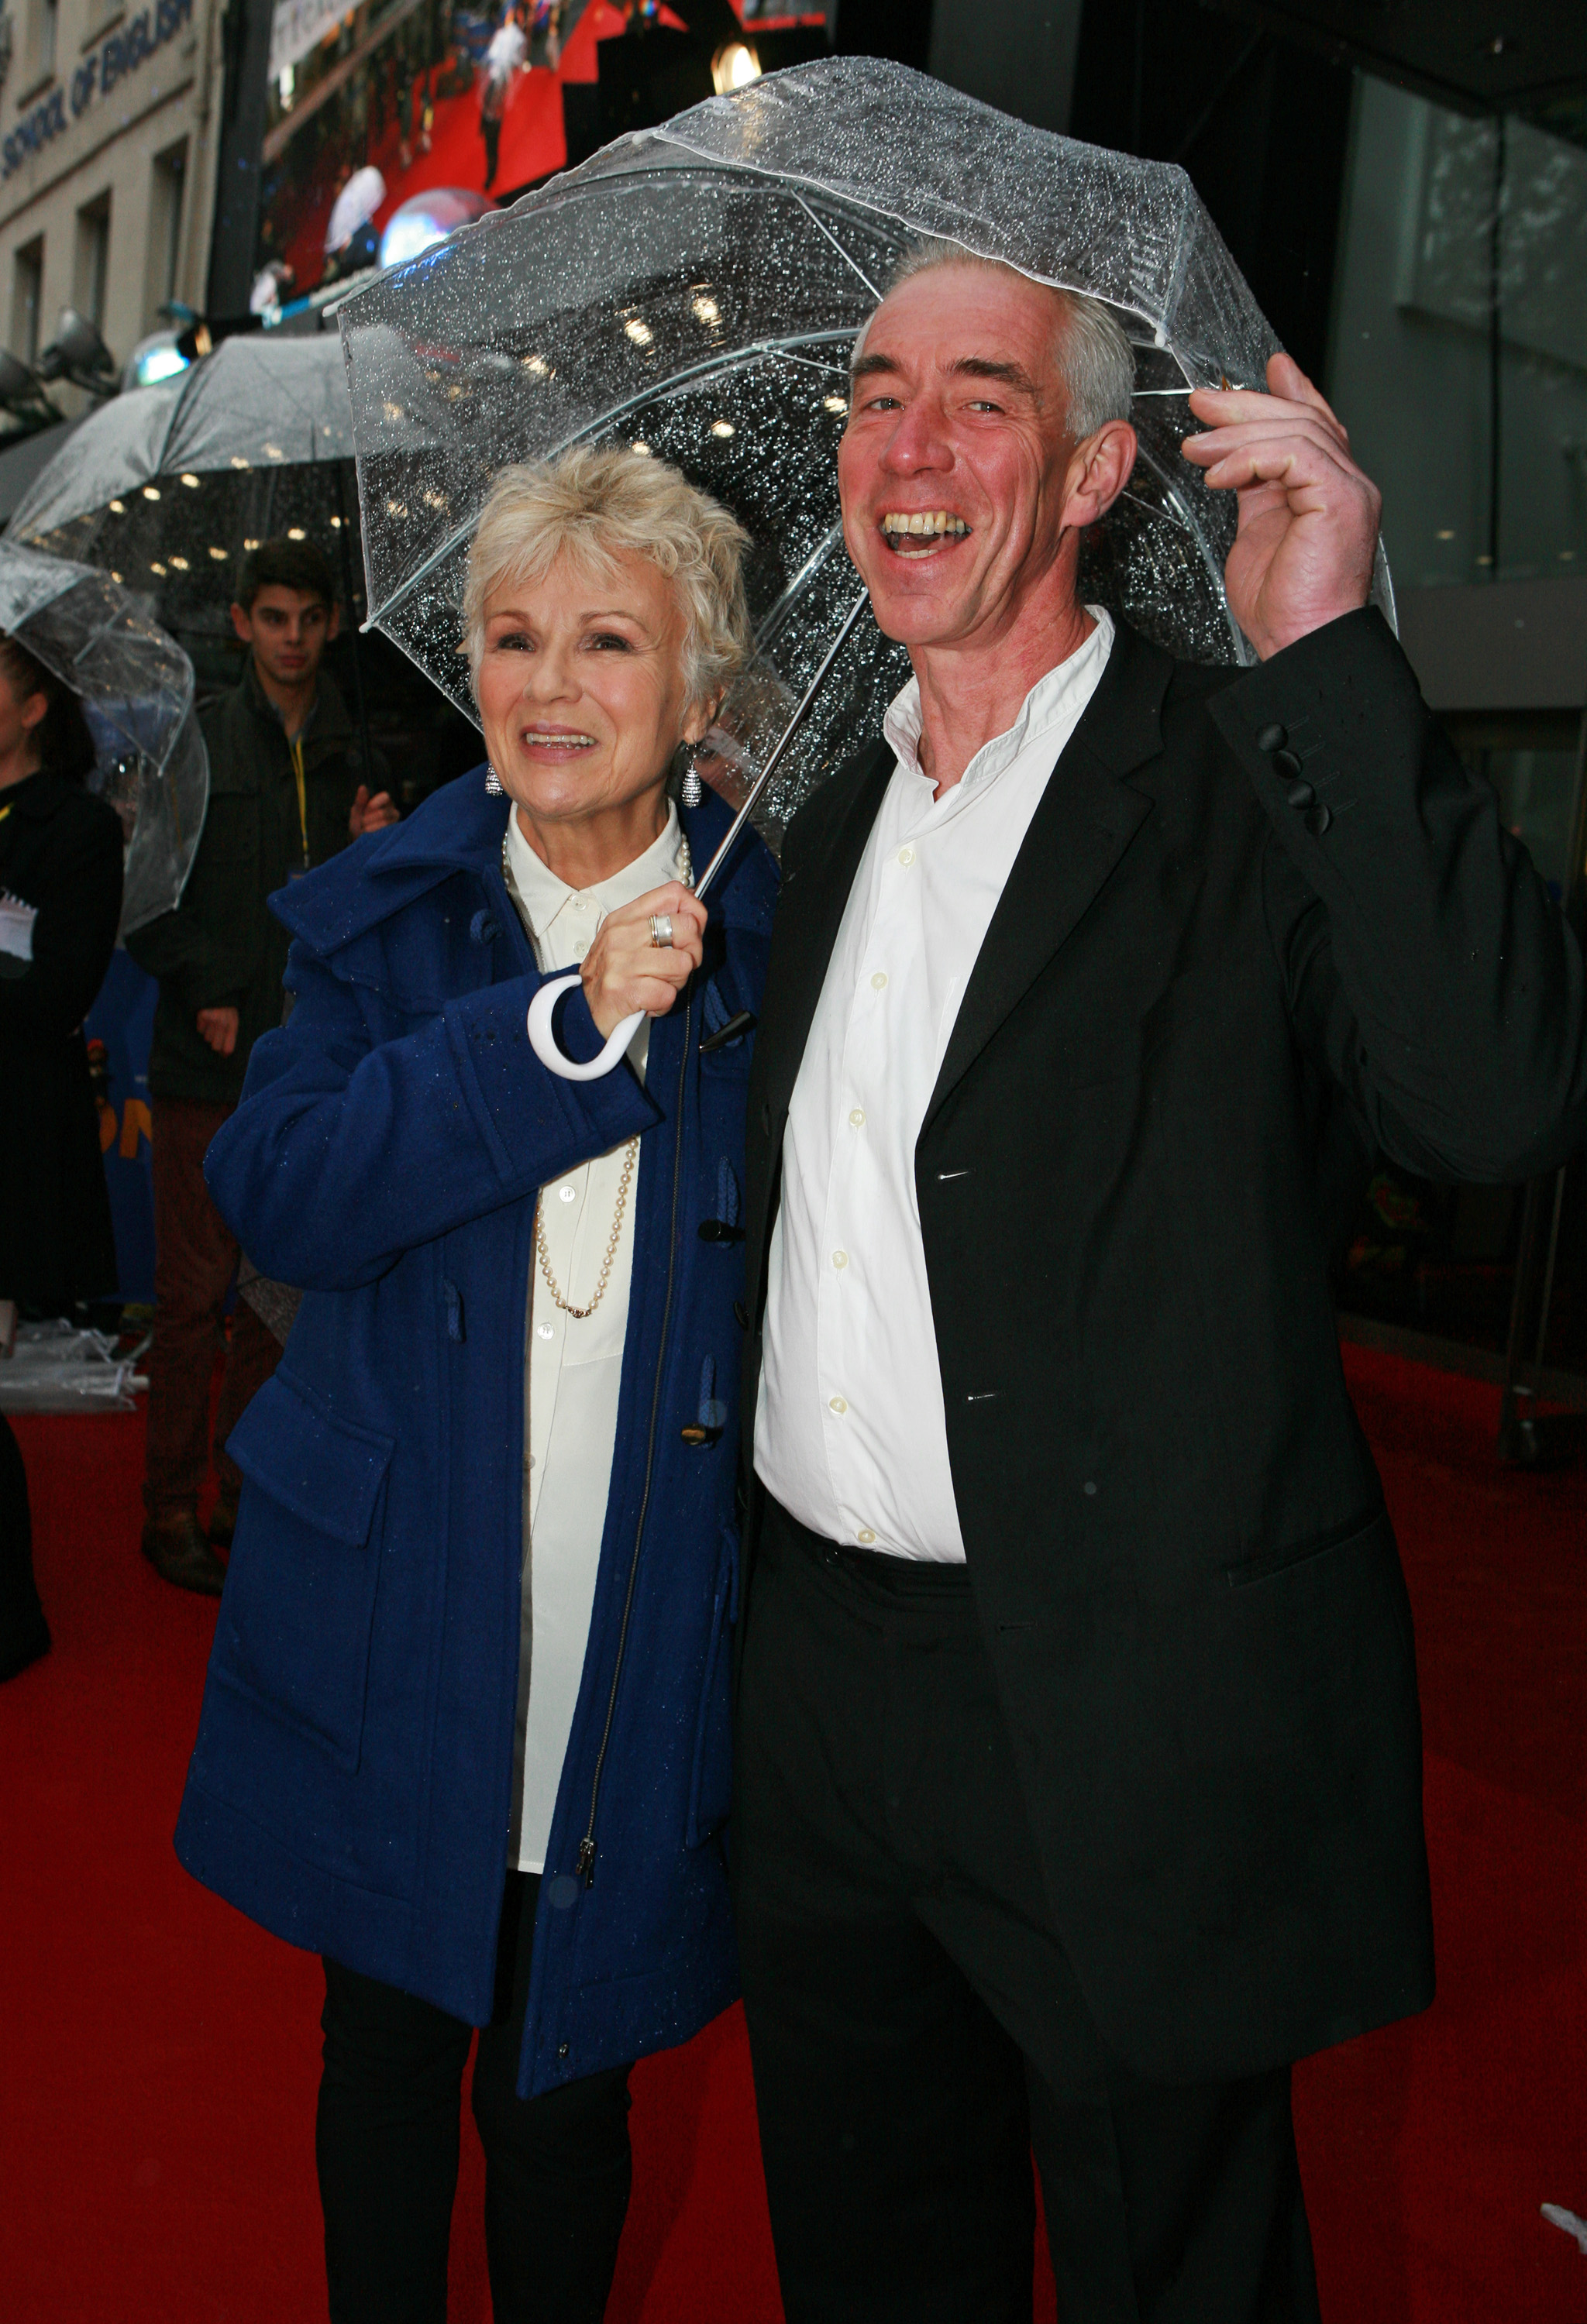 Julie Walters y su esposo Grant Roffey en el estreno mundial de "Paddington", en 2014 en Londres, Inglaterra. | Foto: Getty Images